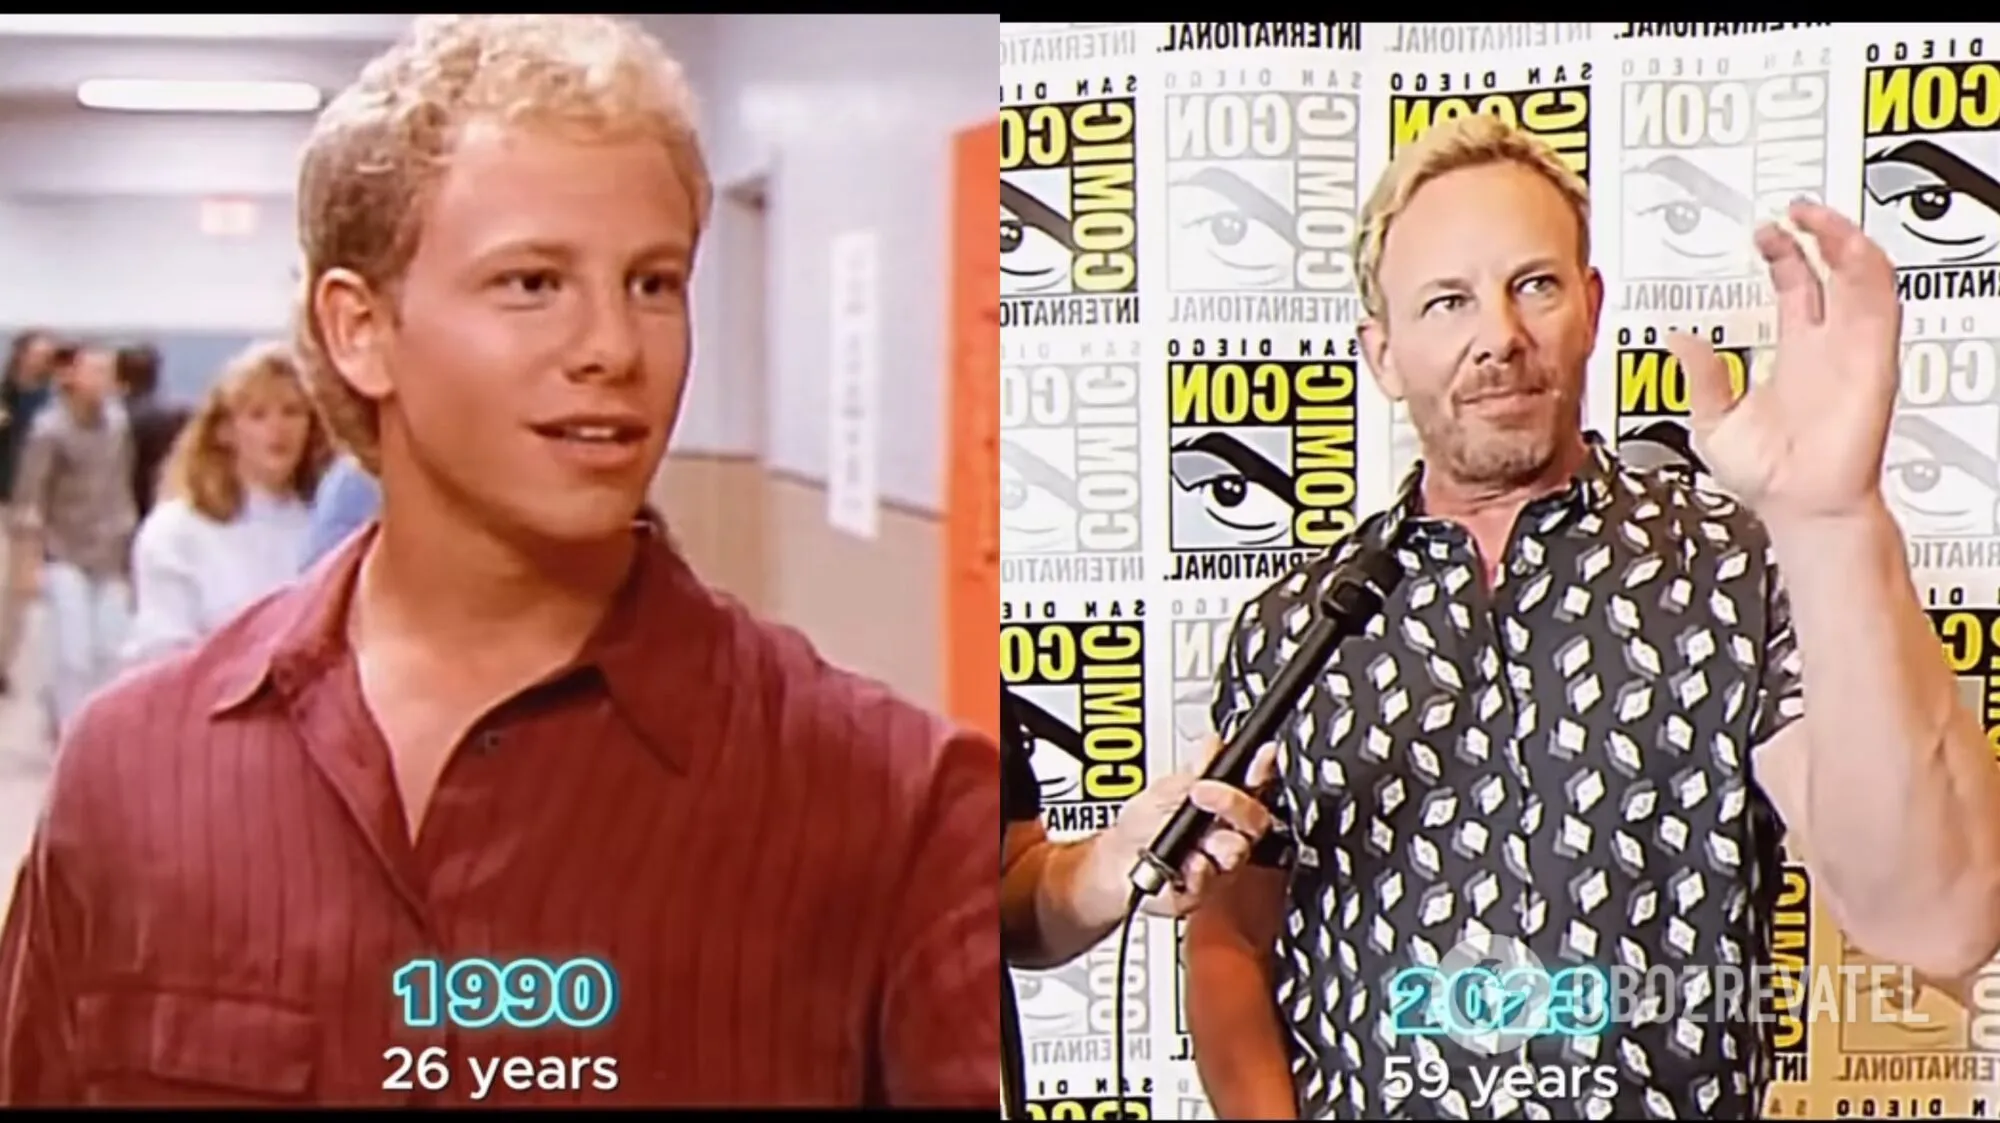 "Кучерявый в свои 60 выглядит идеально": как состарились актеры из культового сериала "Беверли-Хиллз, 90210"